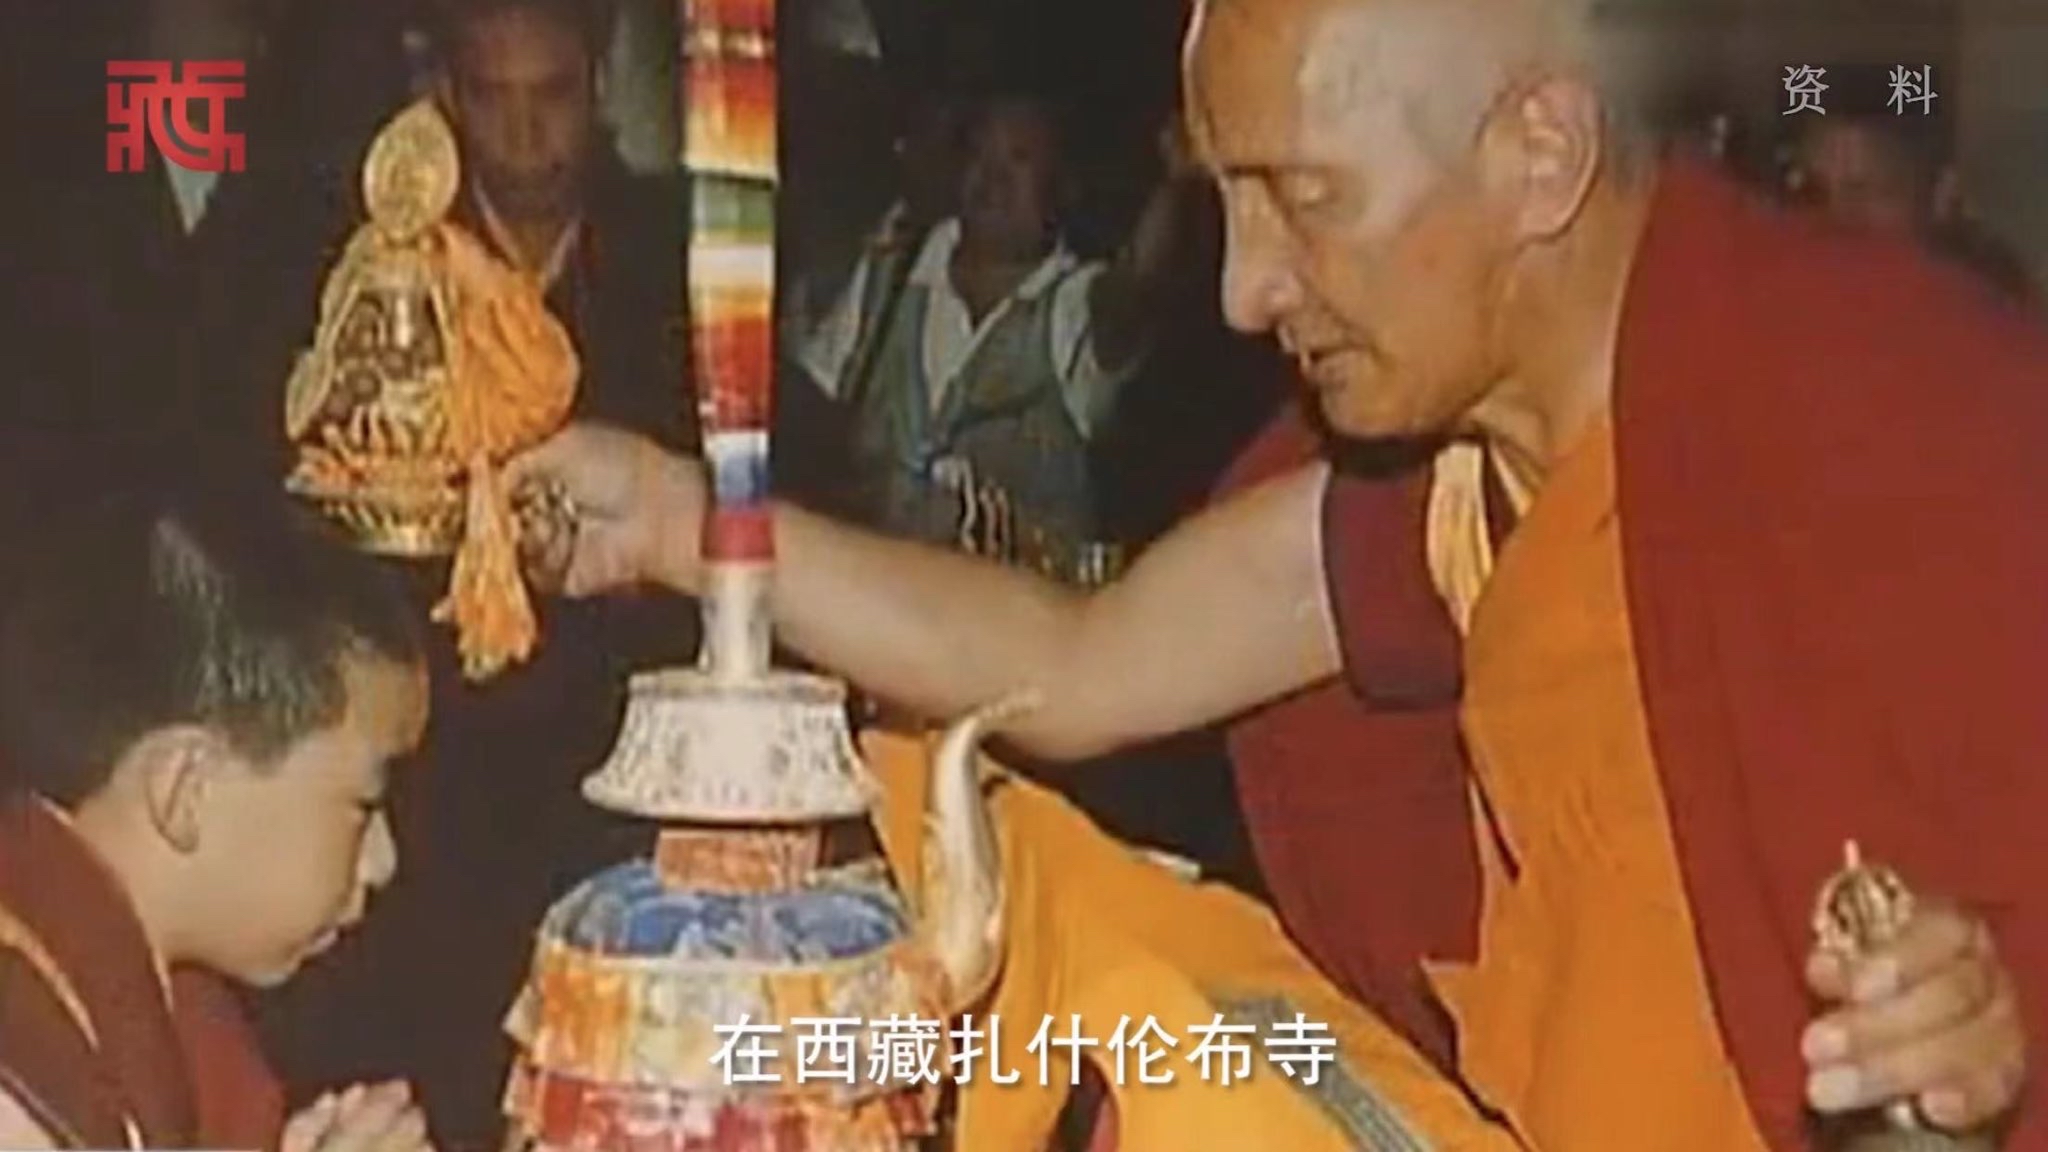 金剛杵天珠とは チベット密教の武器 金剛杵（バジュラ、ドルジェ）双心金剛杵天珠等の意味